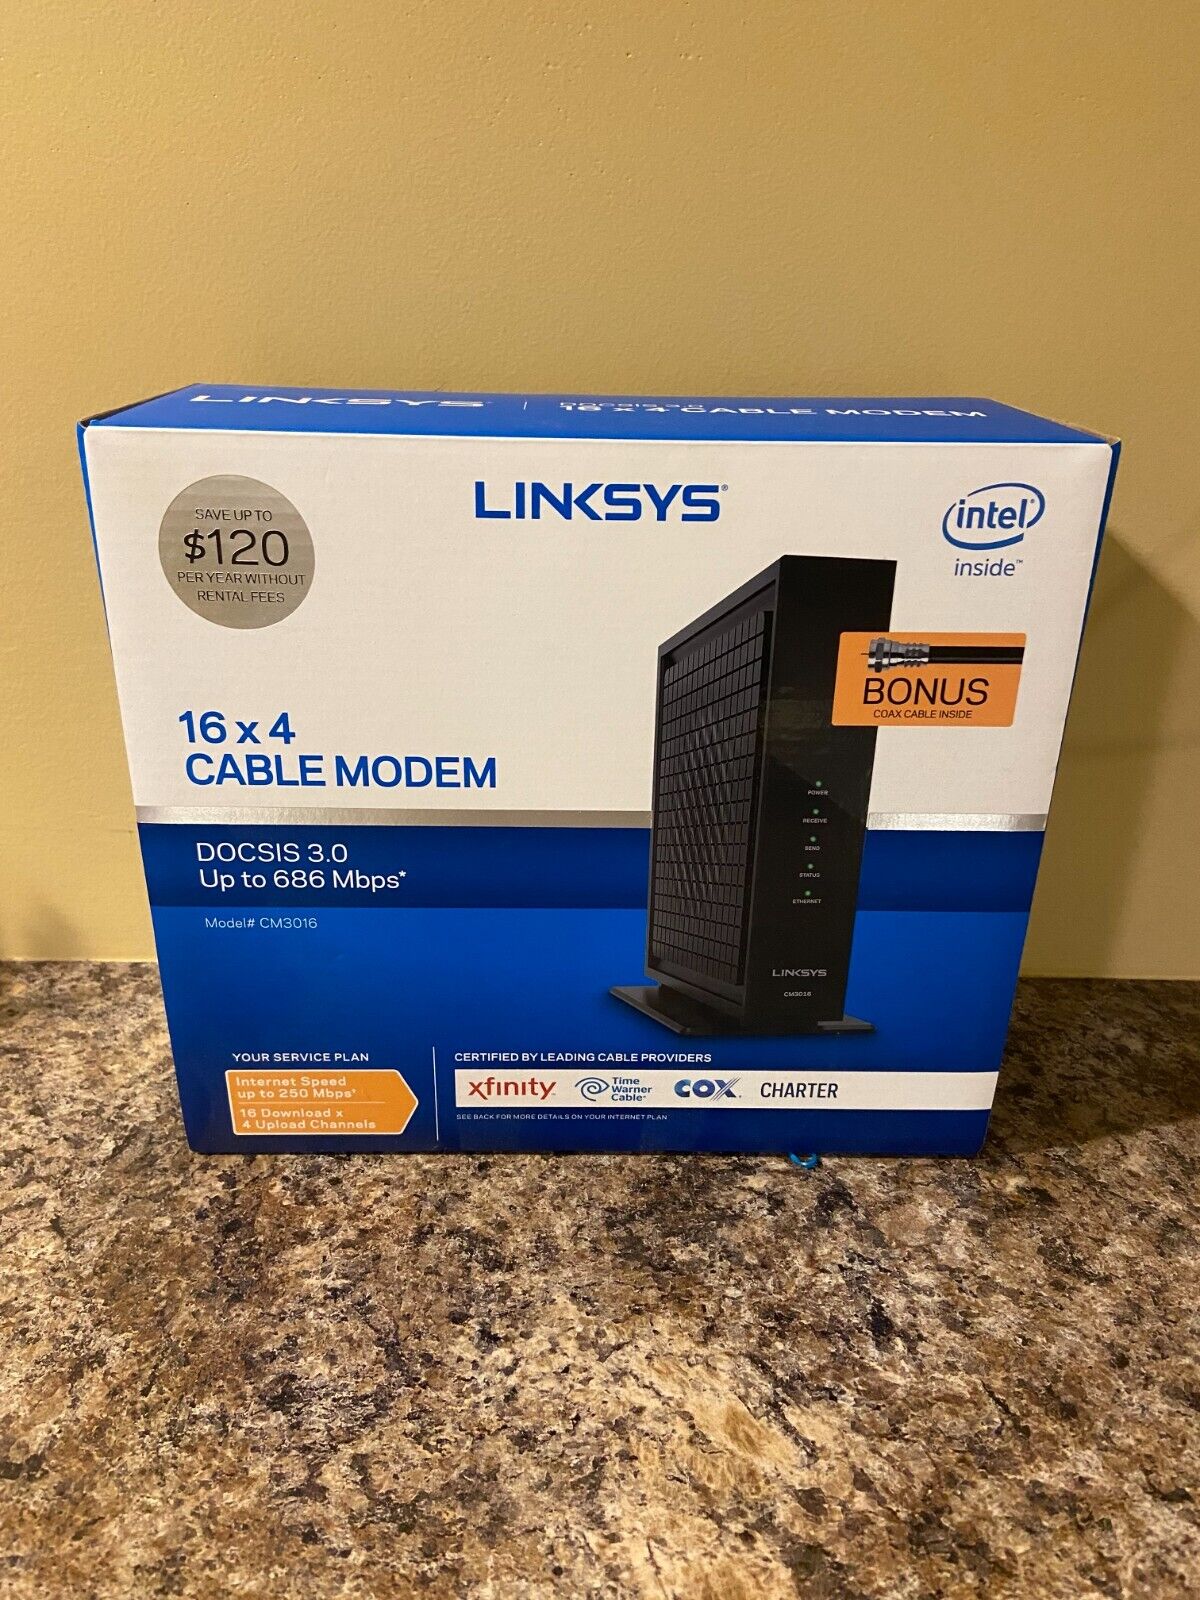 Linksys Cable Modem Model CM3016 DOCSIS 3.0